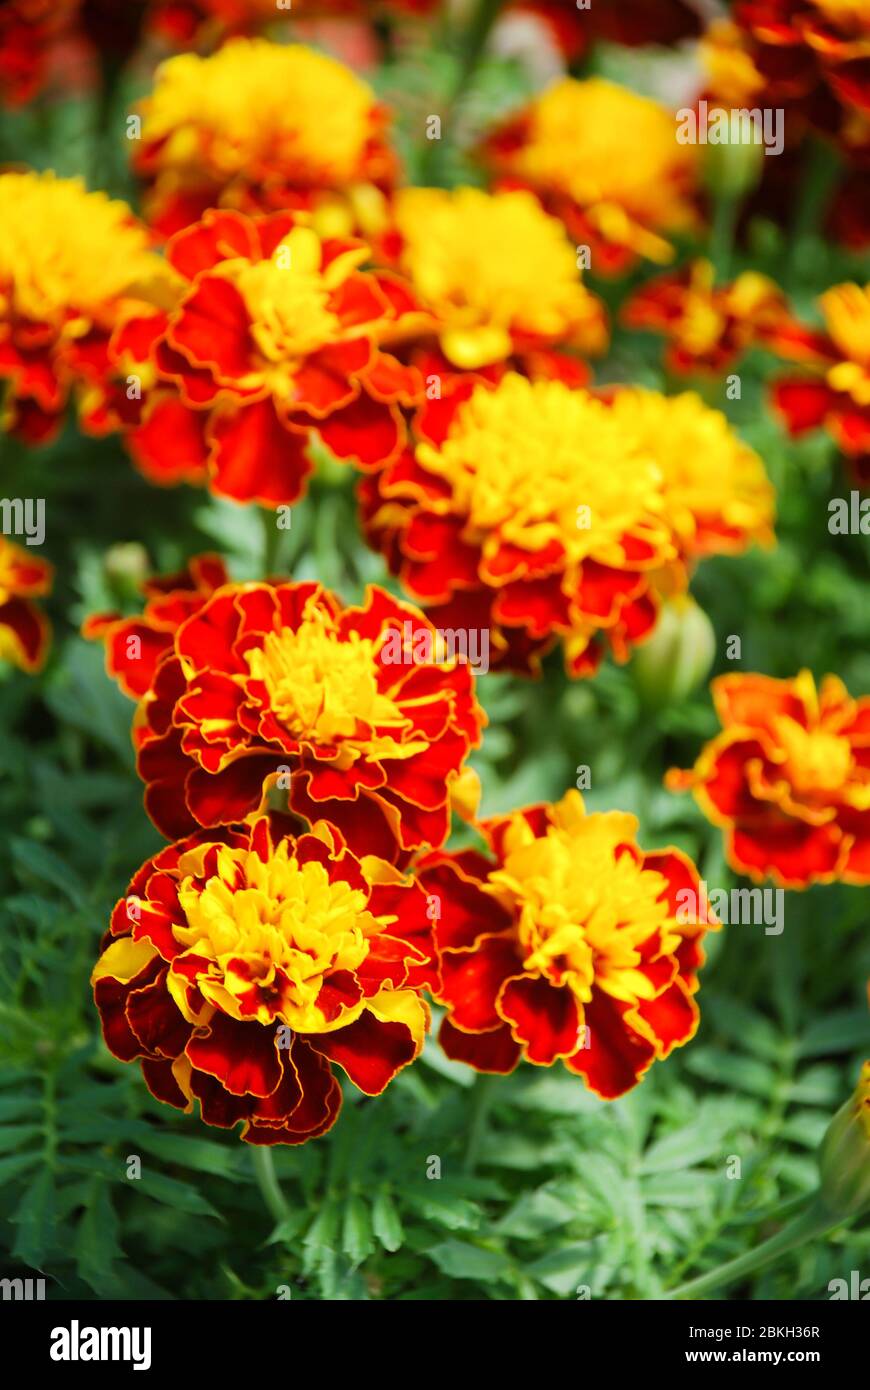 Tagetes patula marigola francese in fiore, fiori gialli arancio, foglie verdi, pianta di vaso Foto Stock